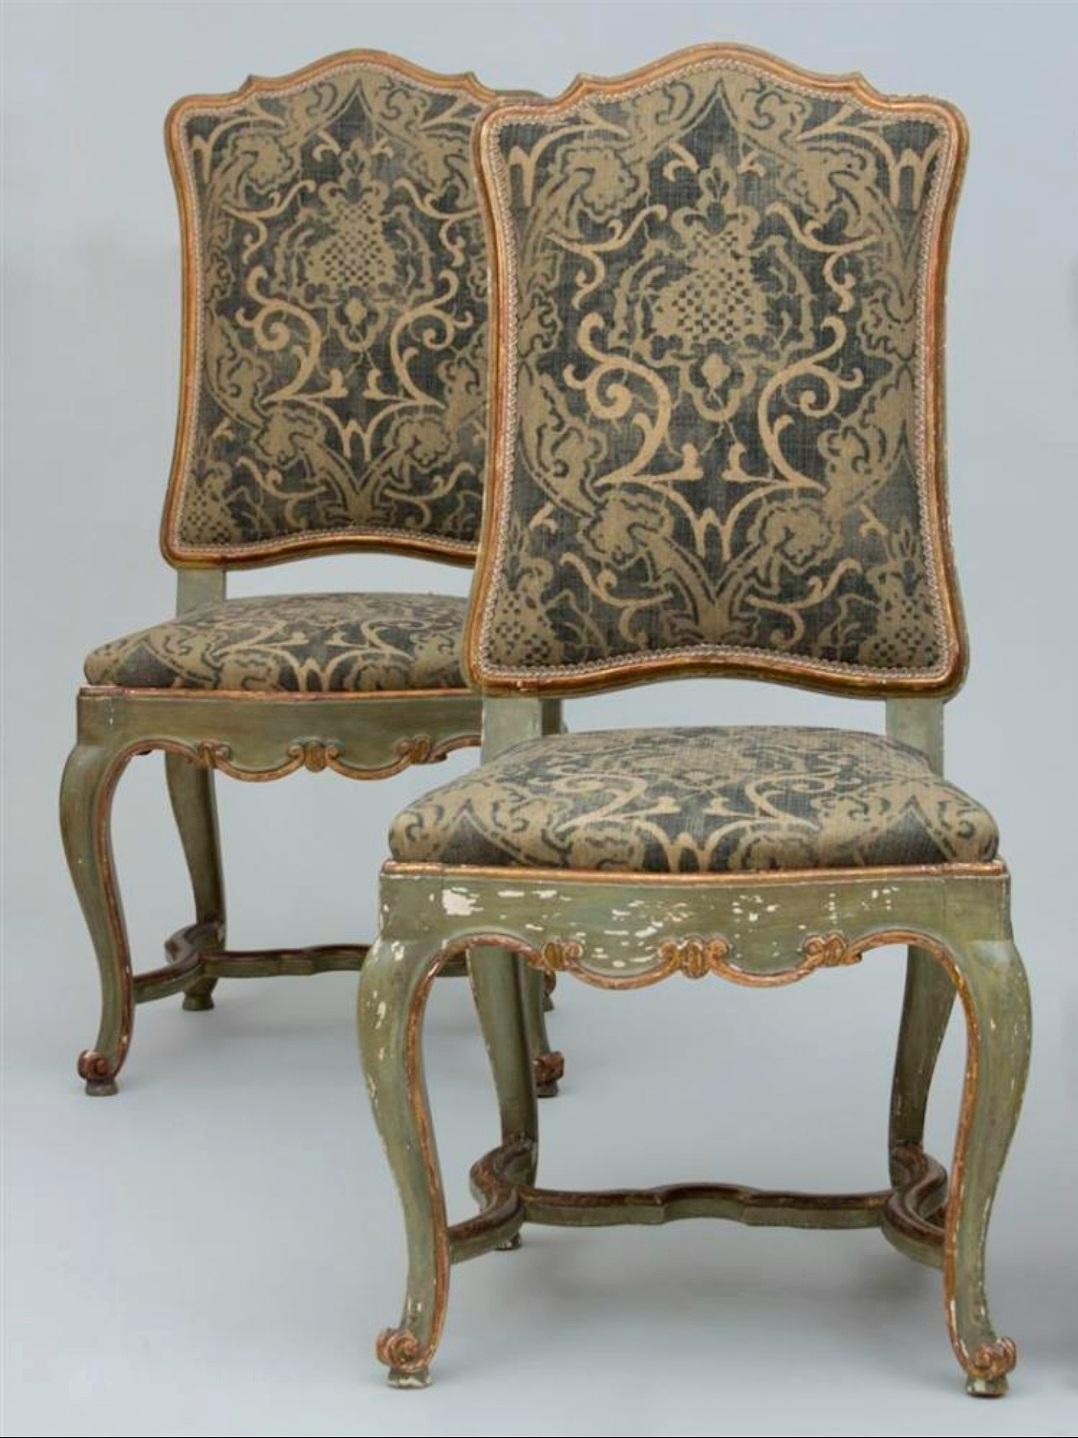 Ensemble de quatre chaises italiennes du XVIIIe siècle, peintes et dorées à la main, vénitiennes. Ces magnifiques chaises sont dotées d'un cadre en bois sculpté avec de jolis détails. La surface est peinte en vert avec des dorures. La construction